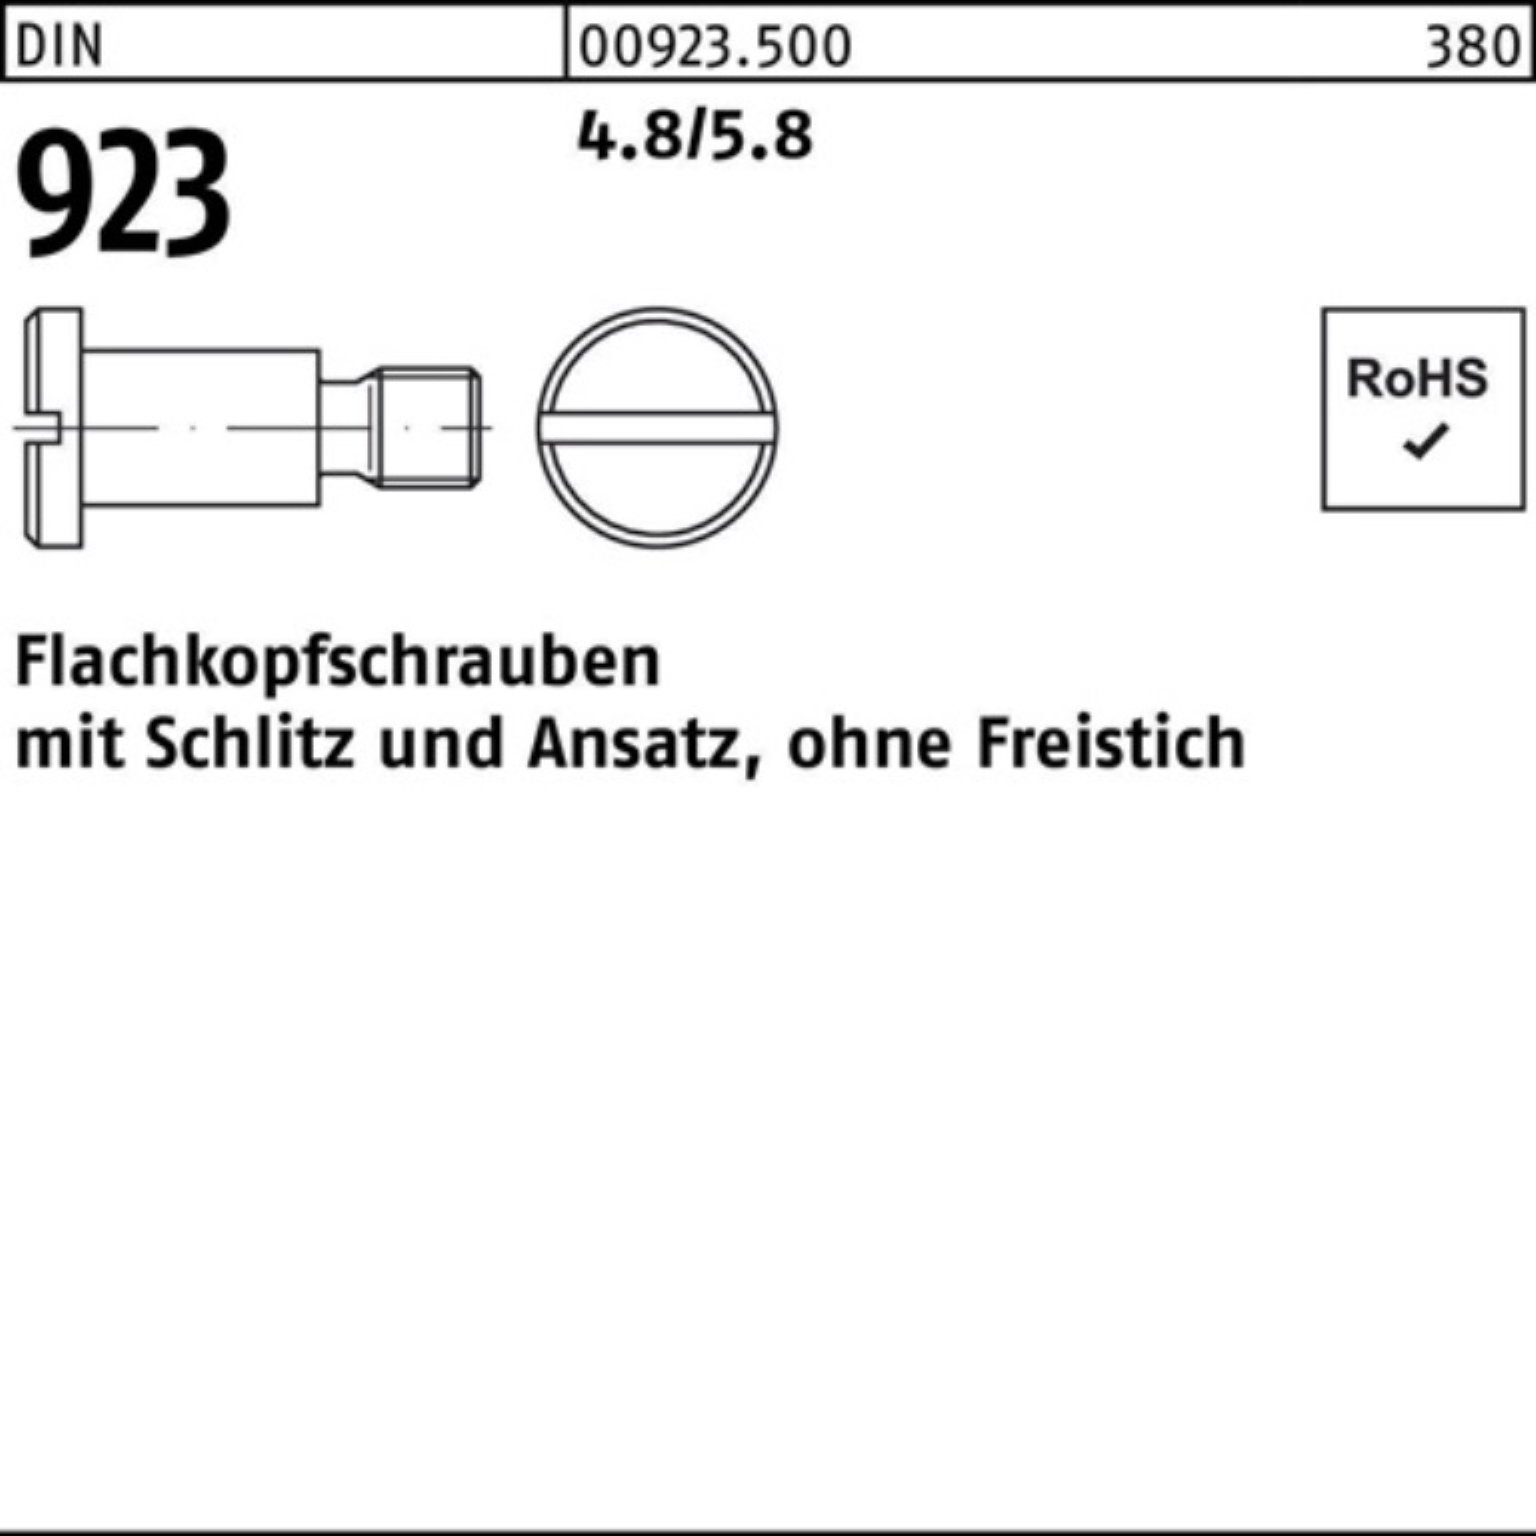 Reyher Schraube 100er Pack DIN 4x M5x 7,0 4.8/5.8 Schlitz/Ansatz 923 Flachkopfschraube